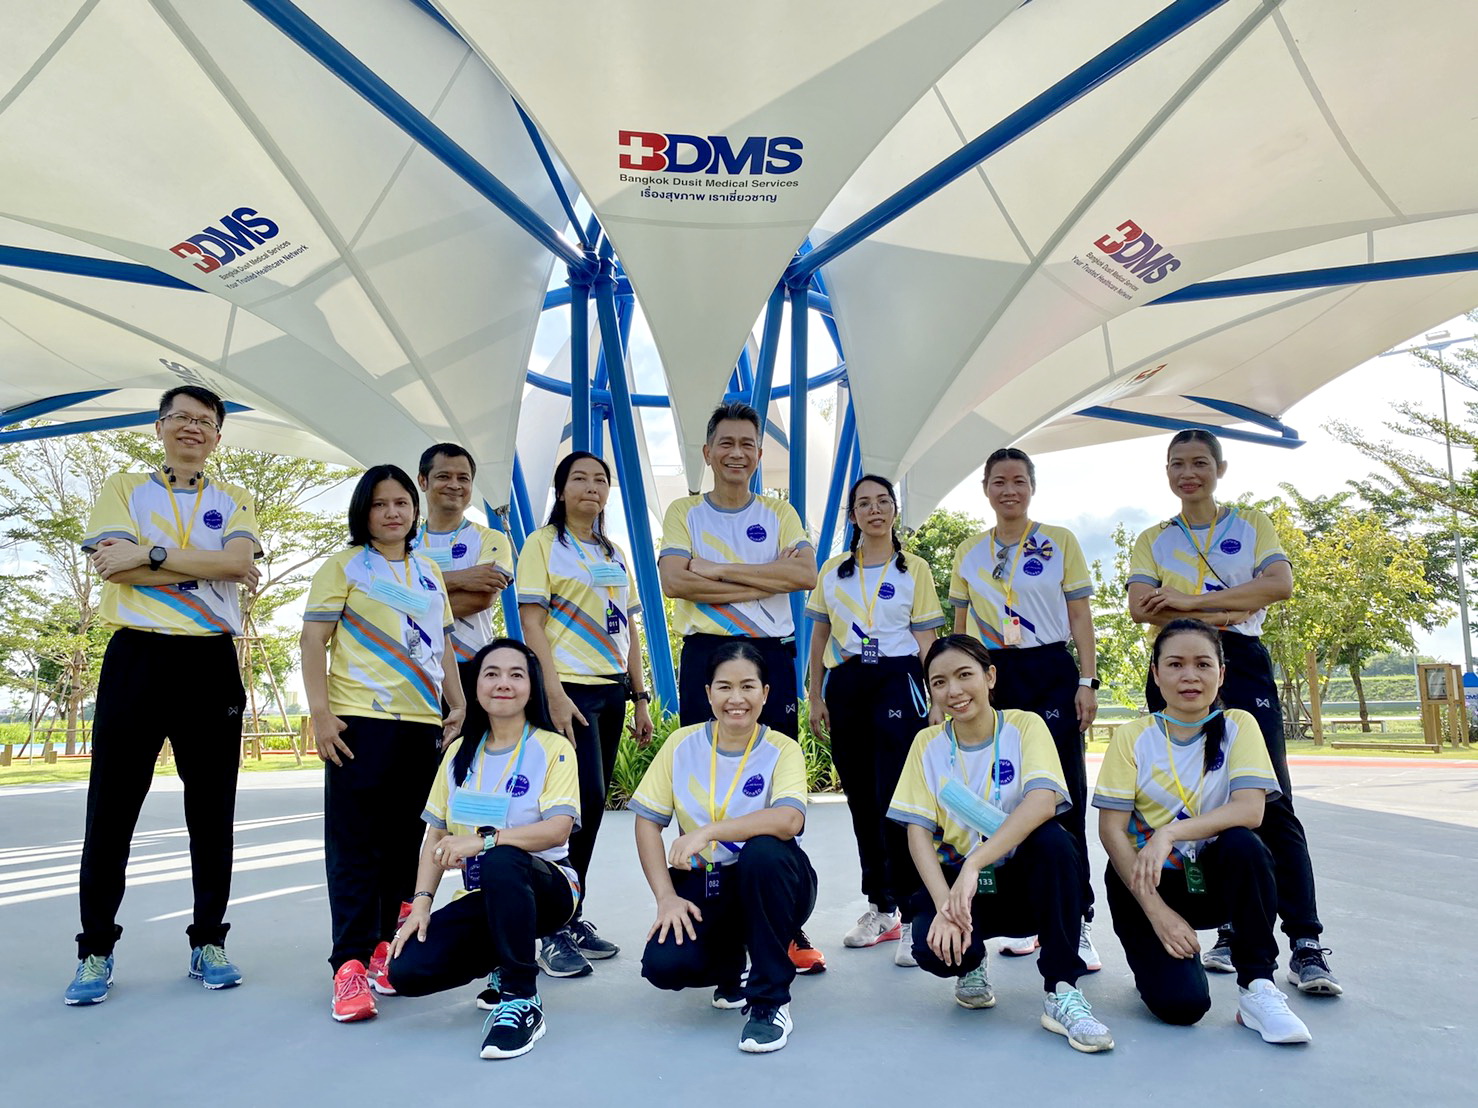 BDMS ร่วมมือกับพันธมิตรและภาคส่วนต่าง ๆ จัดสร้าง สถานออกกำลังกายกลางแจ้ง เพื่อเสริมสร้างสุขภาพแก่สังคมไทย